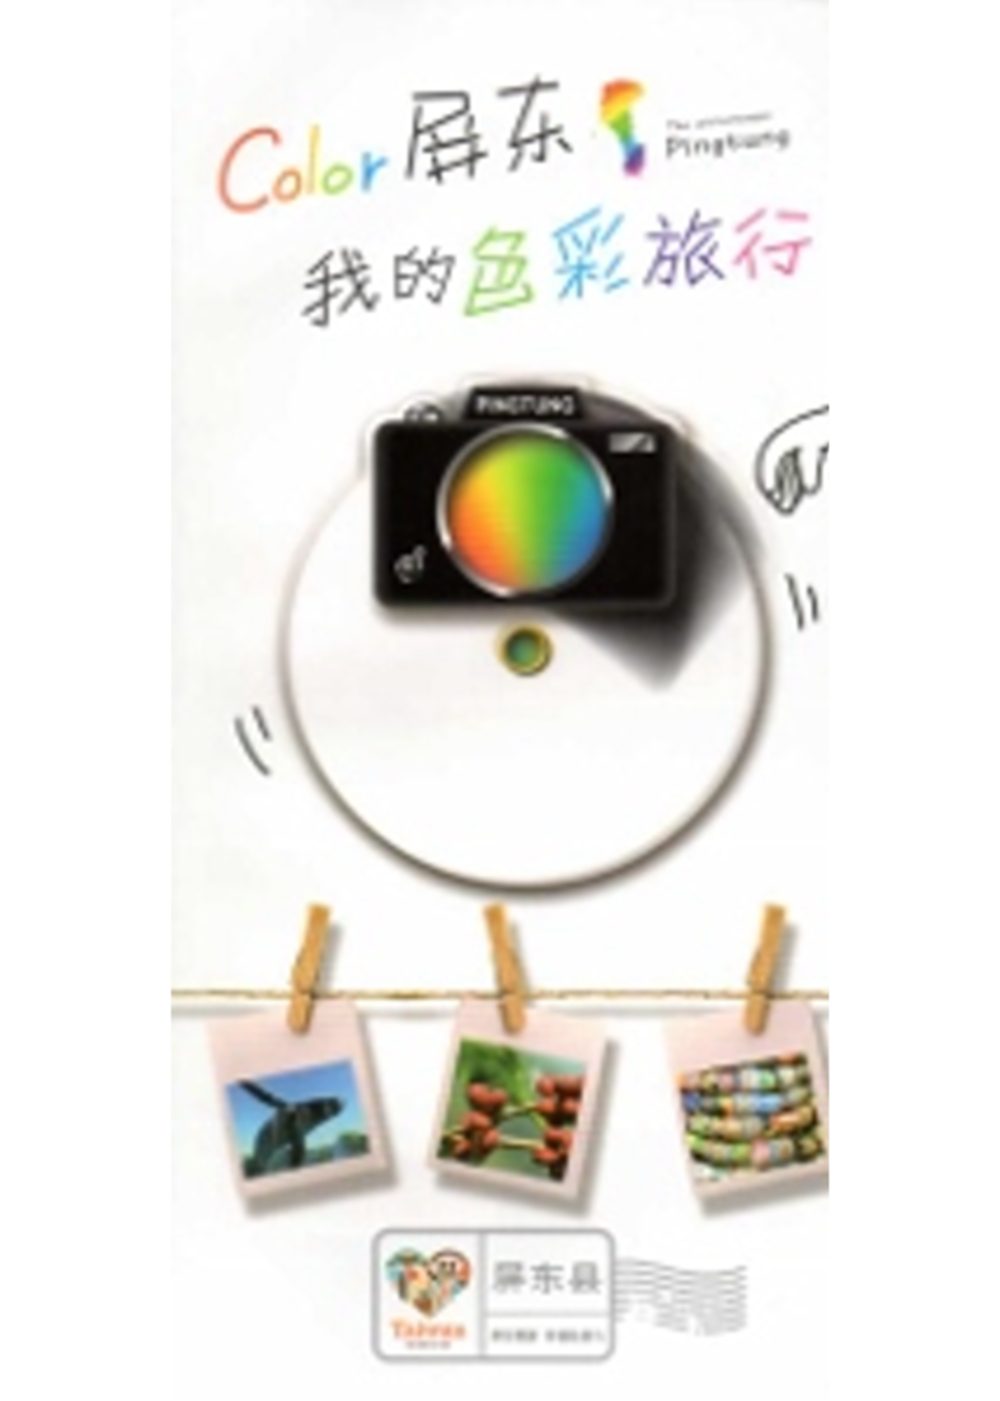 Color屏東，我的色彩旅行：屏東慢遊幸福輕旅行觀光導覽手冊(簡體版)